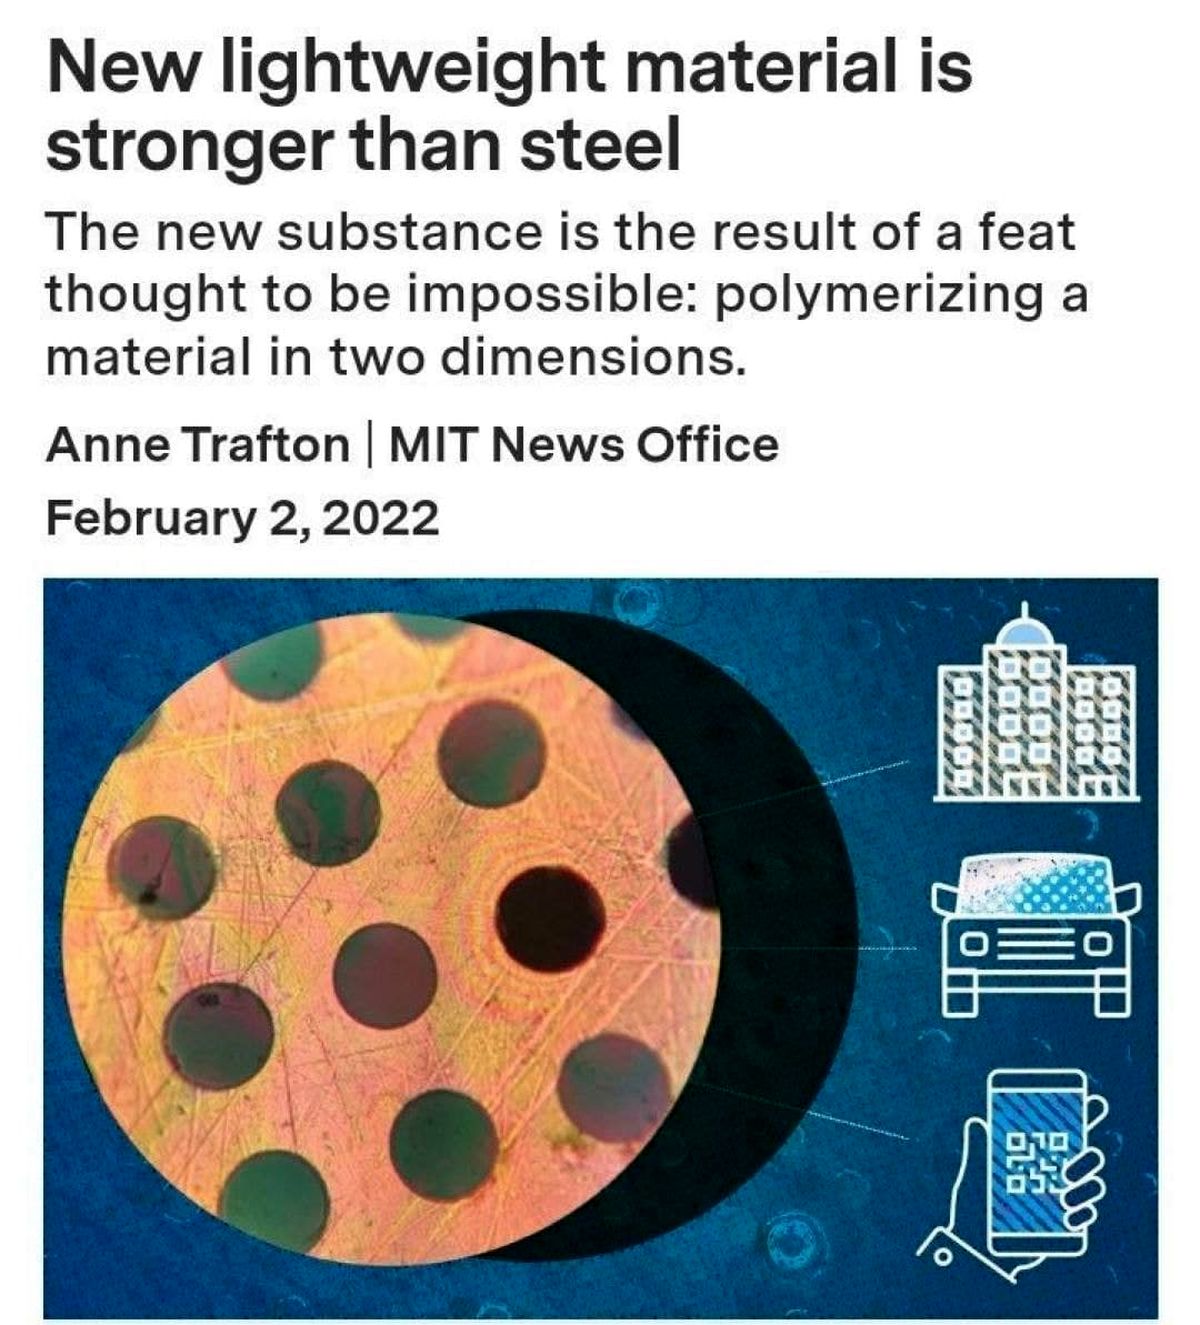 مهندسان ماده جدیدی ساختند که از فولاد قوی‌تر و از پلاستیک سبکتر است/ این ماده به راحتی به تولید انبوه می رسد